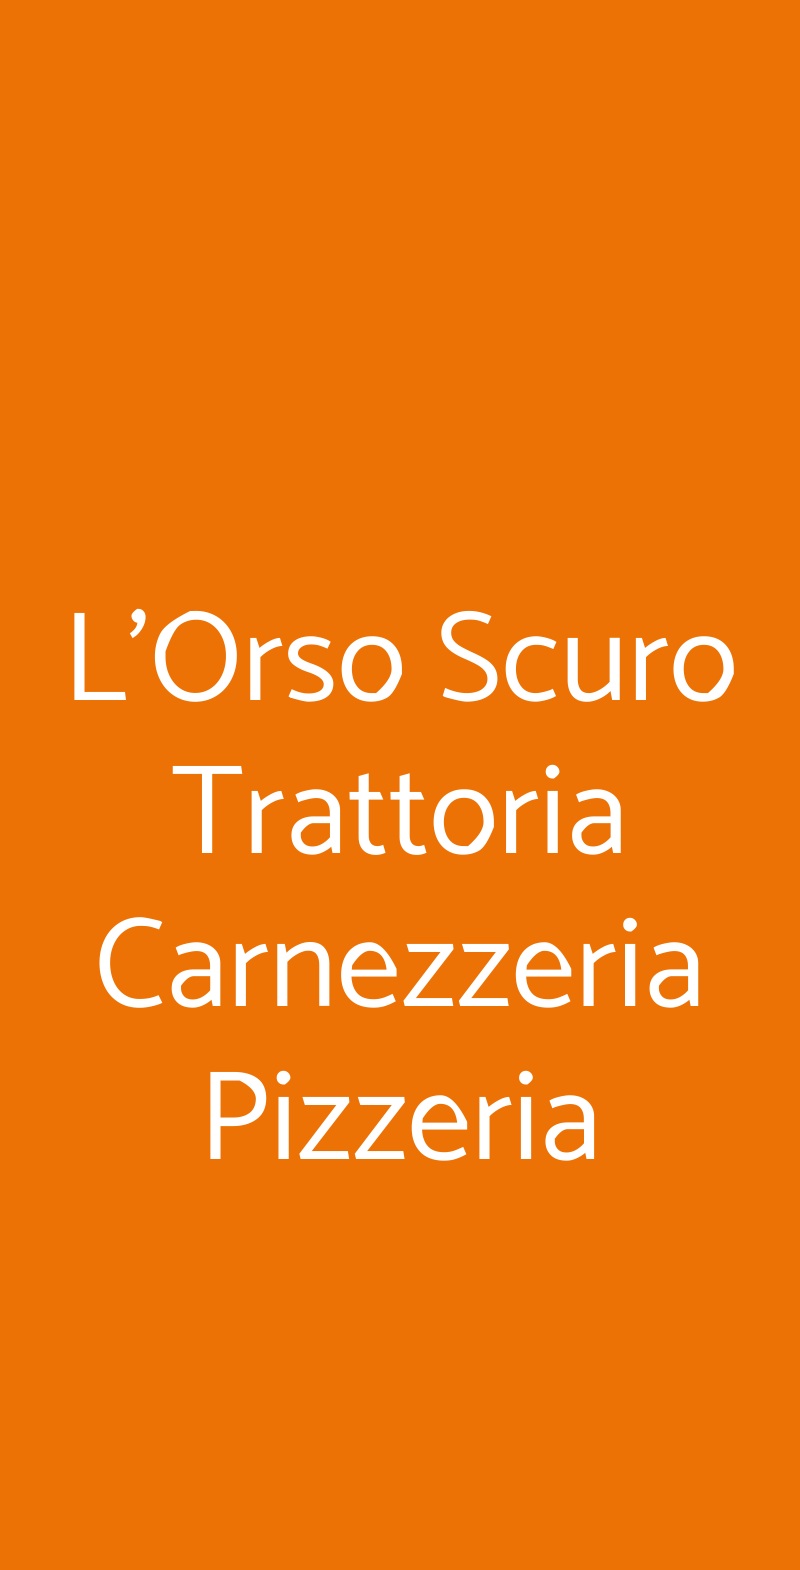 L'Orso Scuro Trattoria Carnezzeria Pizzeria Trecastagni menù 1 pagina